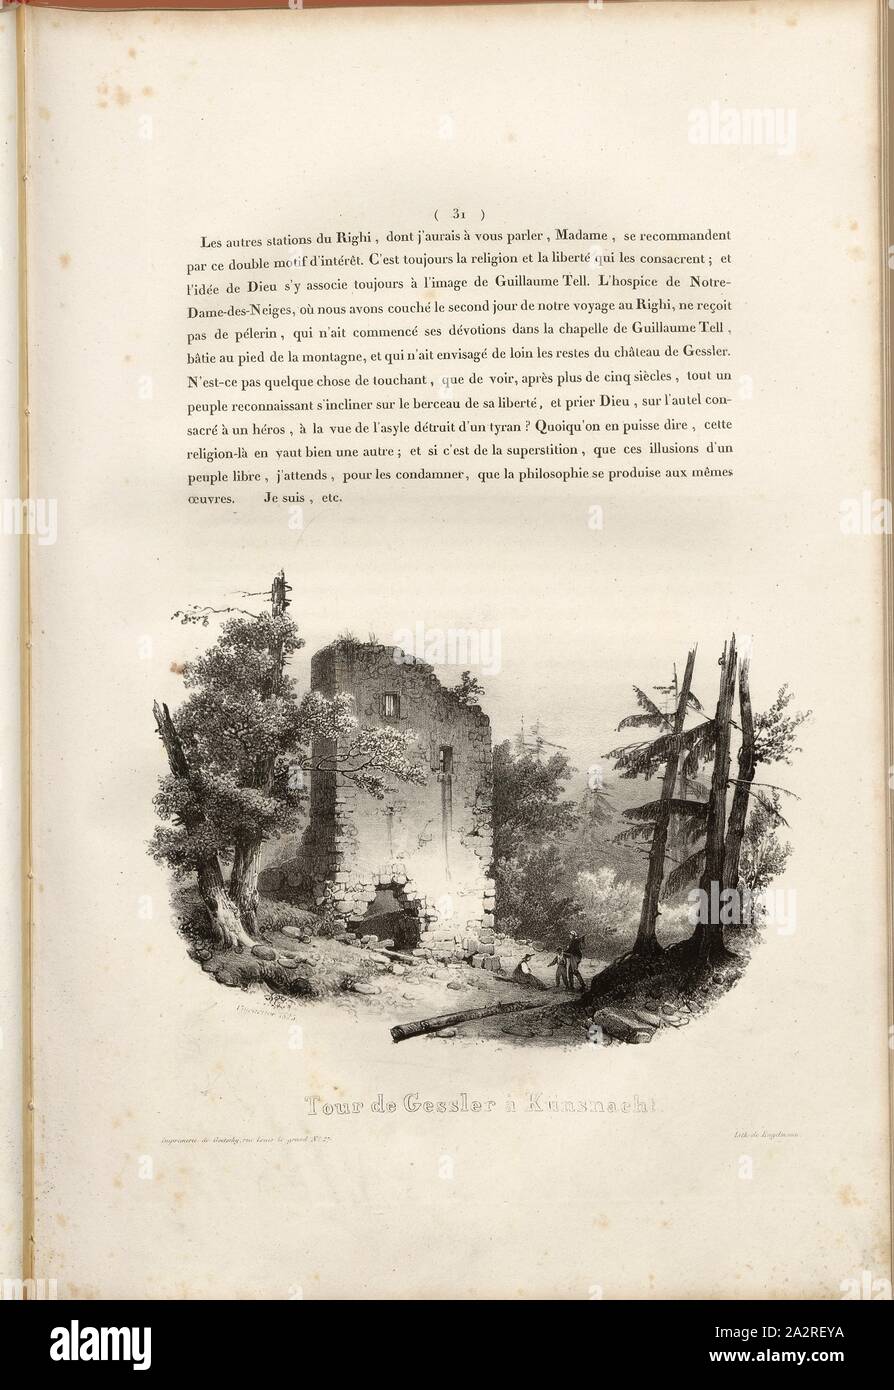 Tour de Gessler at Künsnacht, Ruin Gesslerburg near Küssnacht, signed: Villeneuve, Engelmann, lithograph, plate 3, p. 31 (vol. 2, part 3), Villeneuve, M.; Engelmann, Godefroy (lith.), 1825, Hilaire Léon Sazerac, Godefroy Engelmann: Lettres sur la Suisse (...). Paris: [s.n.], 1823-1832 Stock Photo